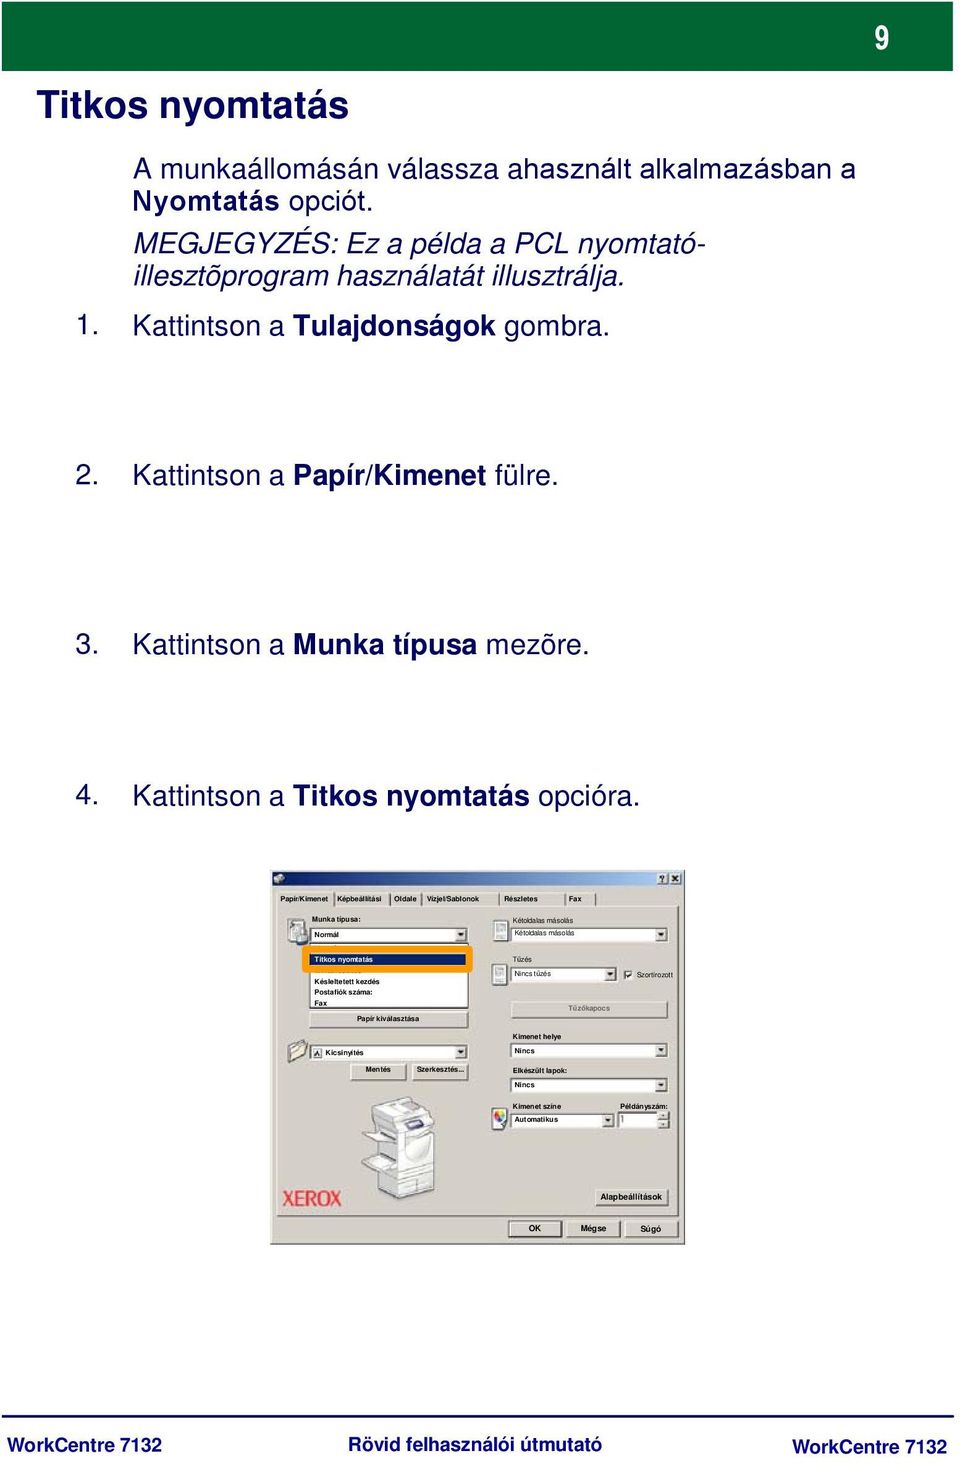 Papír/Kimenet Képbeállítási Oldale Vízjel/Sablonok Részletes Fax Munka típusa: Normál Kétoldalas másolás Kétoldalas másolás Normál Titkos nyomtatás Mintakészítés Késleltetett kezdés